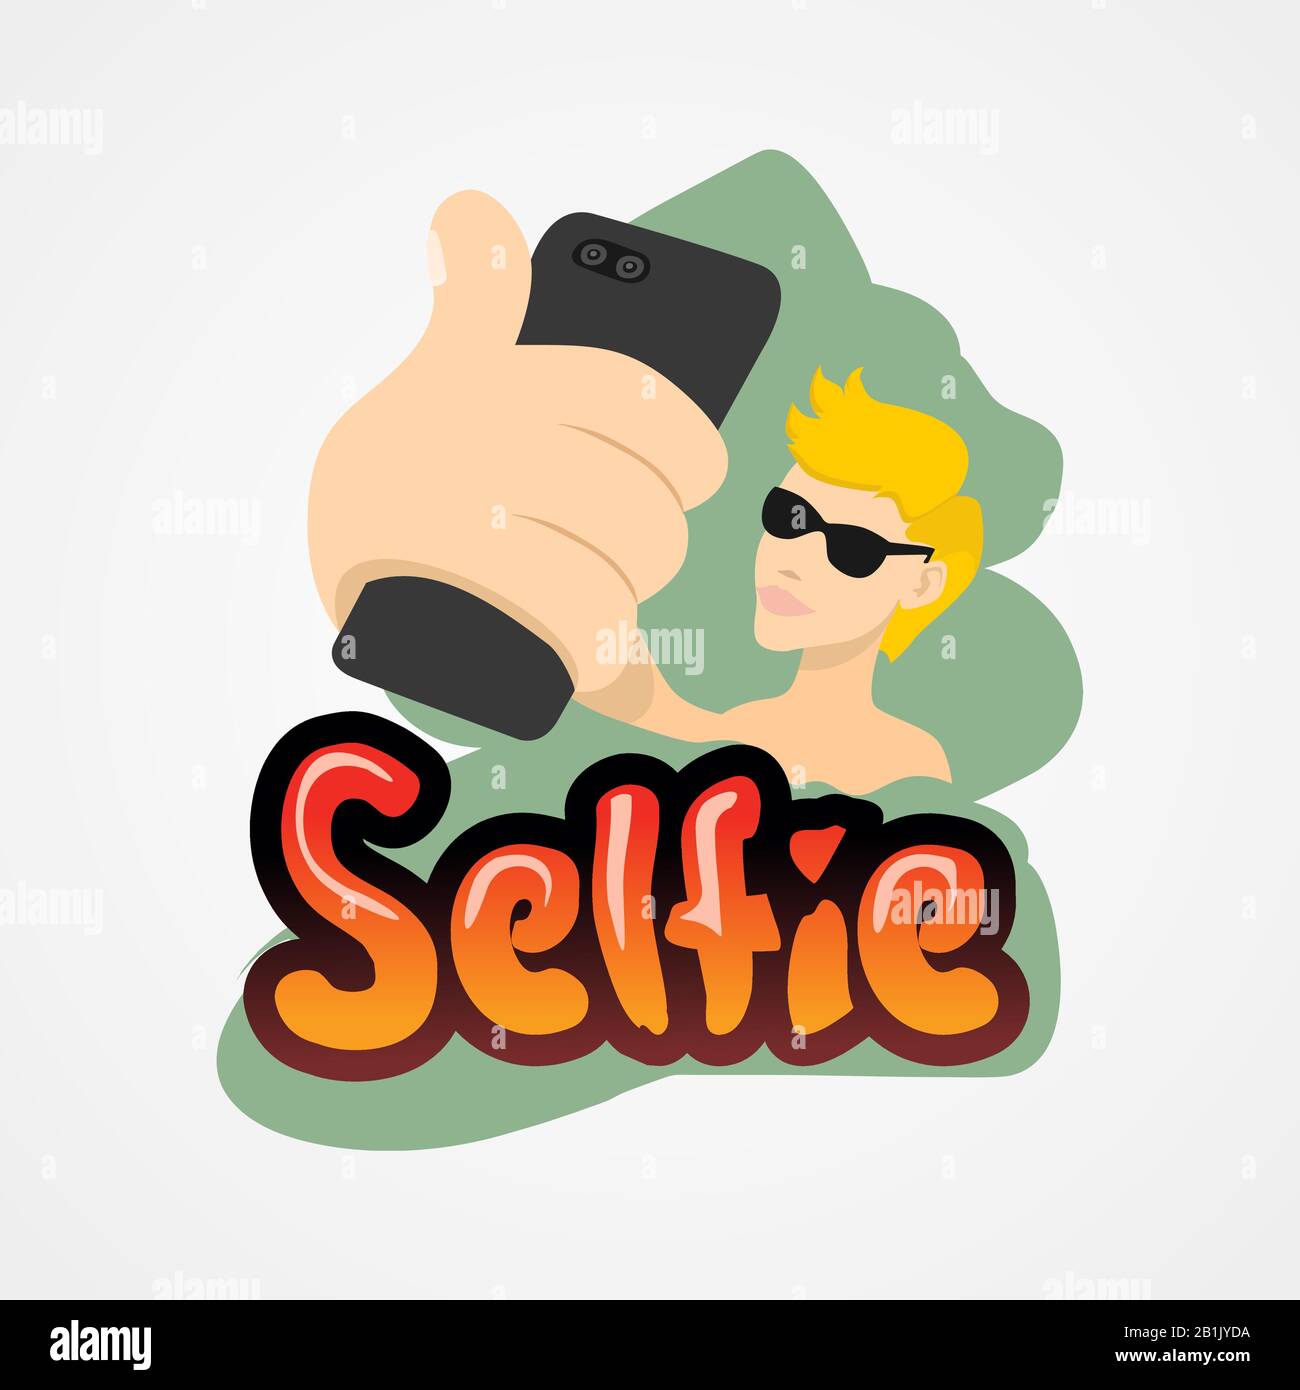 Jeune homme prenant selfie avec smartphone simple illustration vectorielle de style plat. Illustration de Vecteur